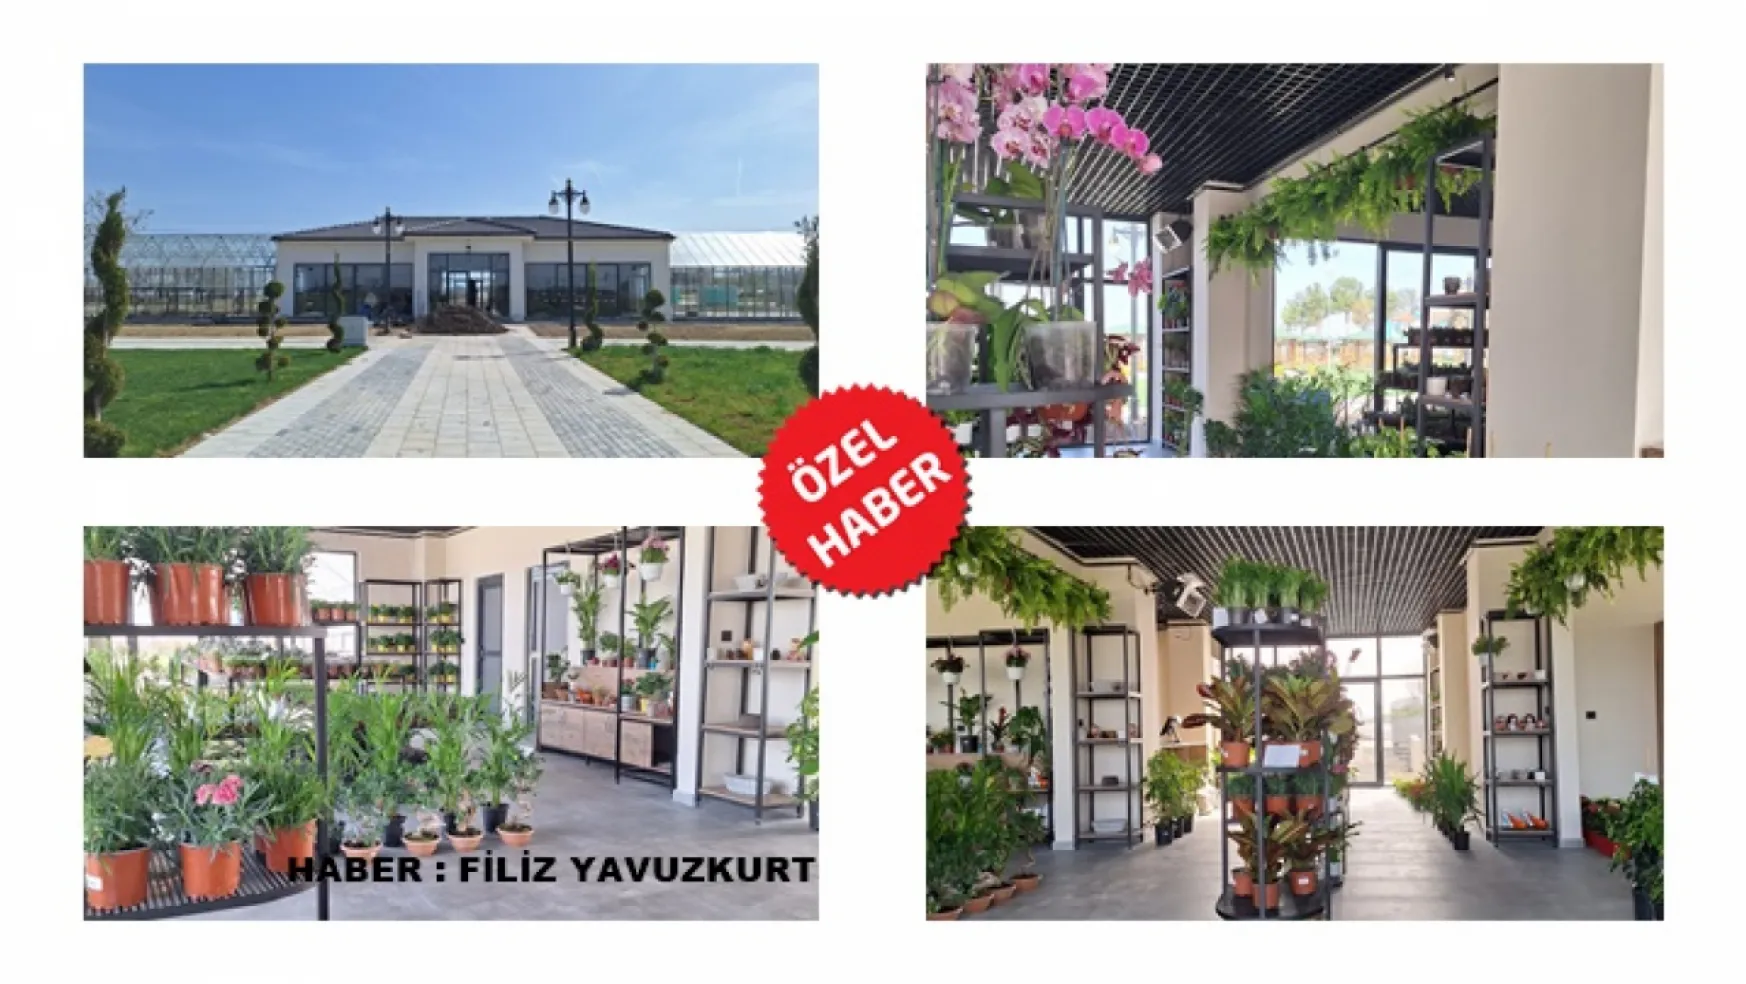 Battalgazi'nin Yeni Cazibe Merkezi 'Botanik market'